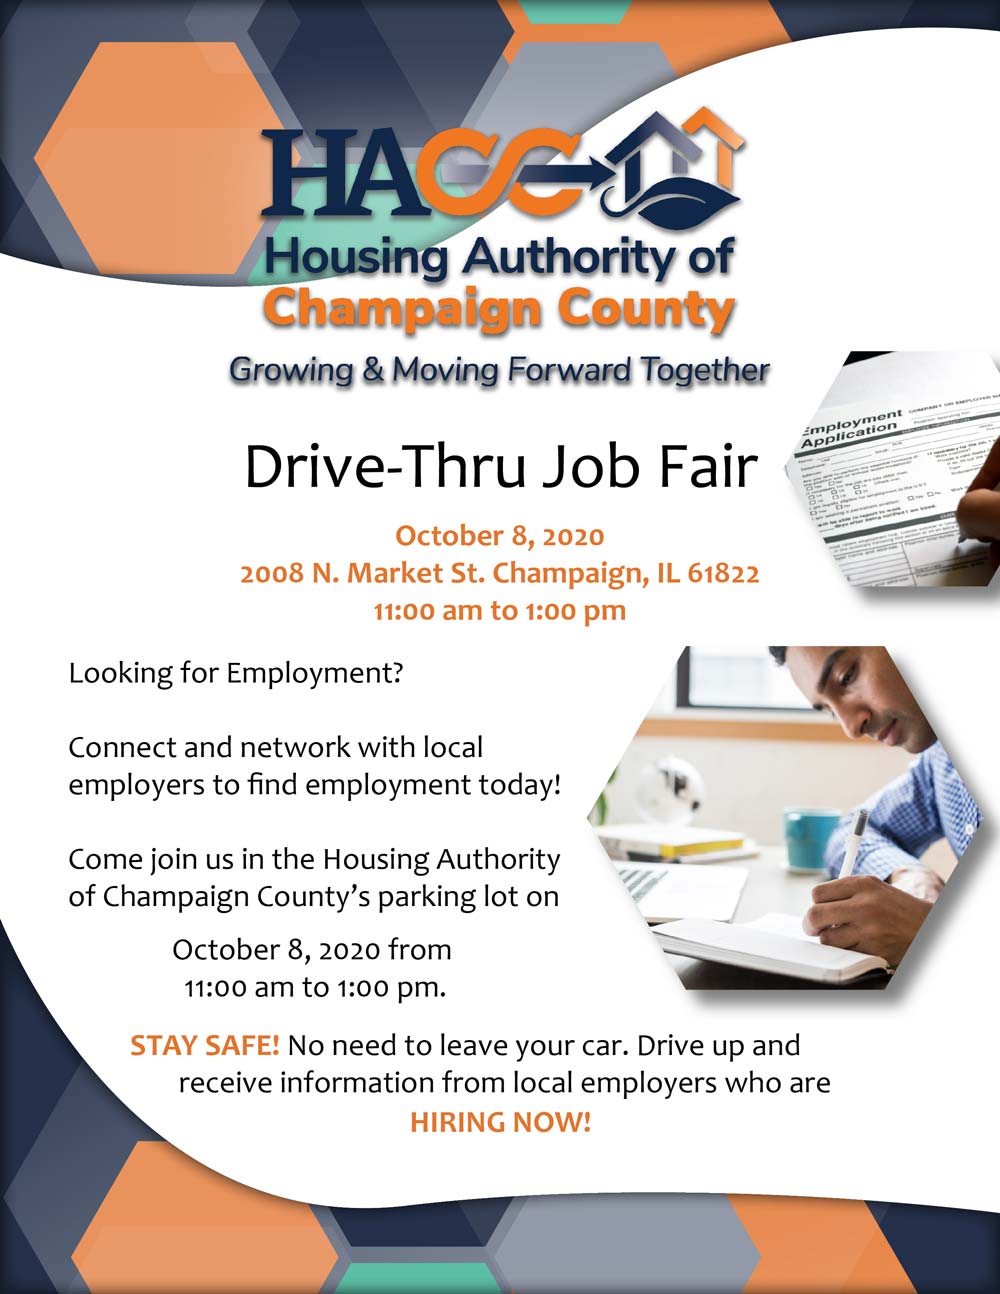 Drive-Thru Job Fair flyer, all information as listed below.